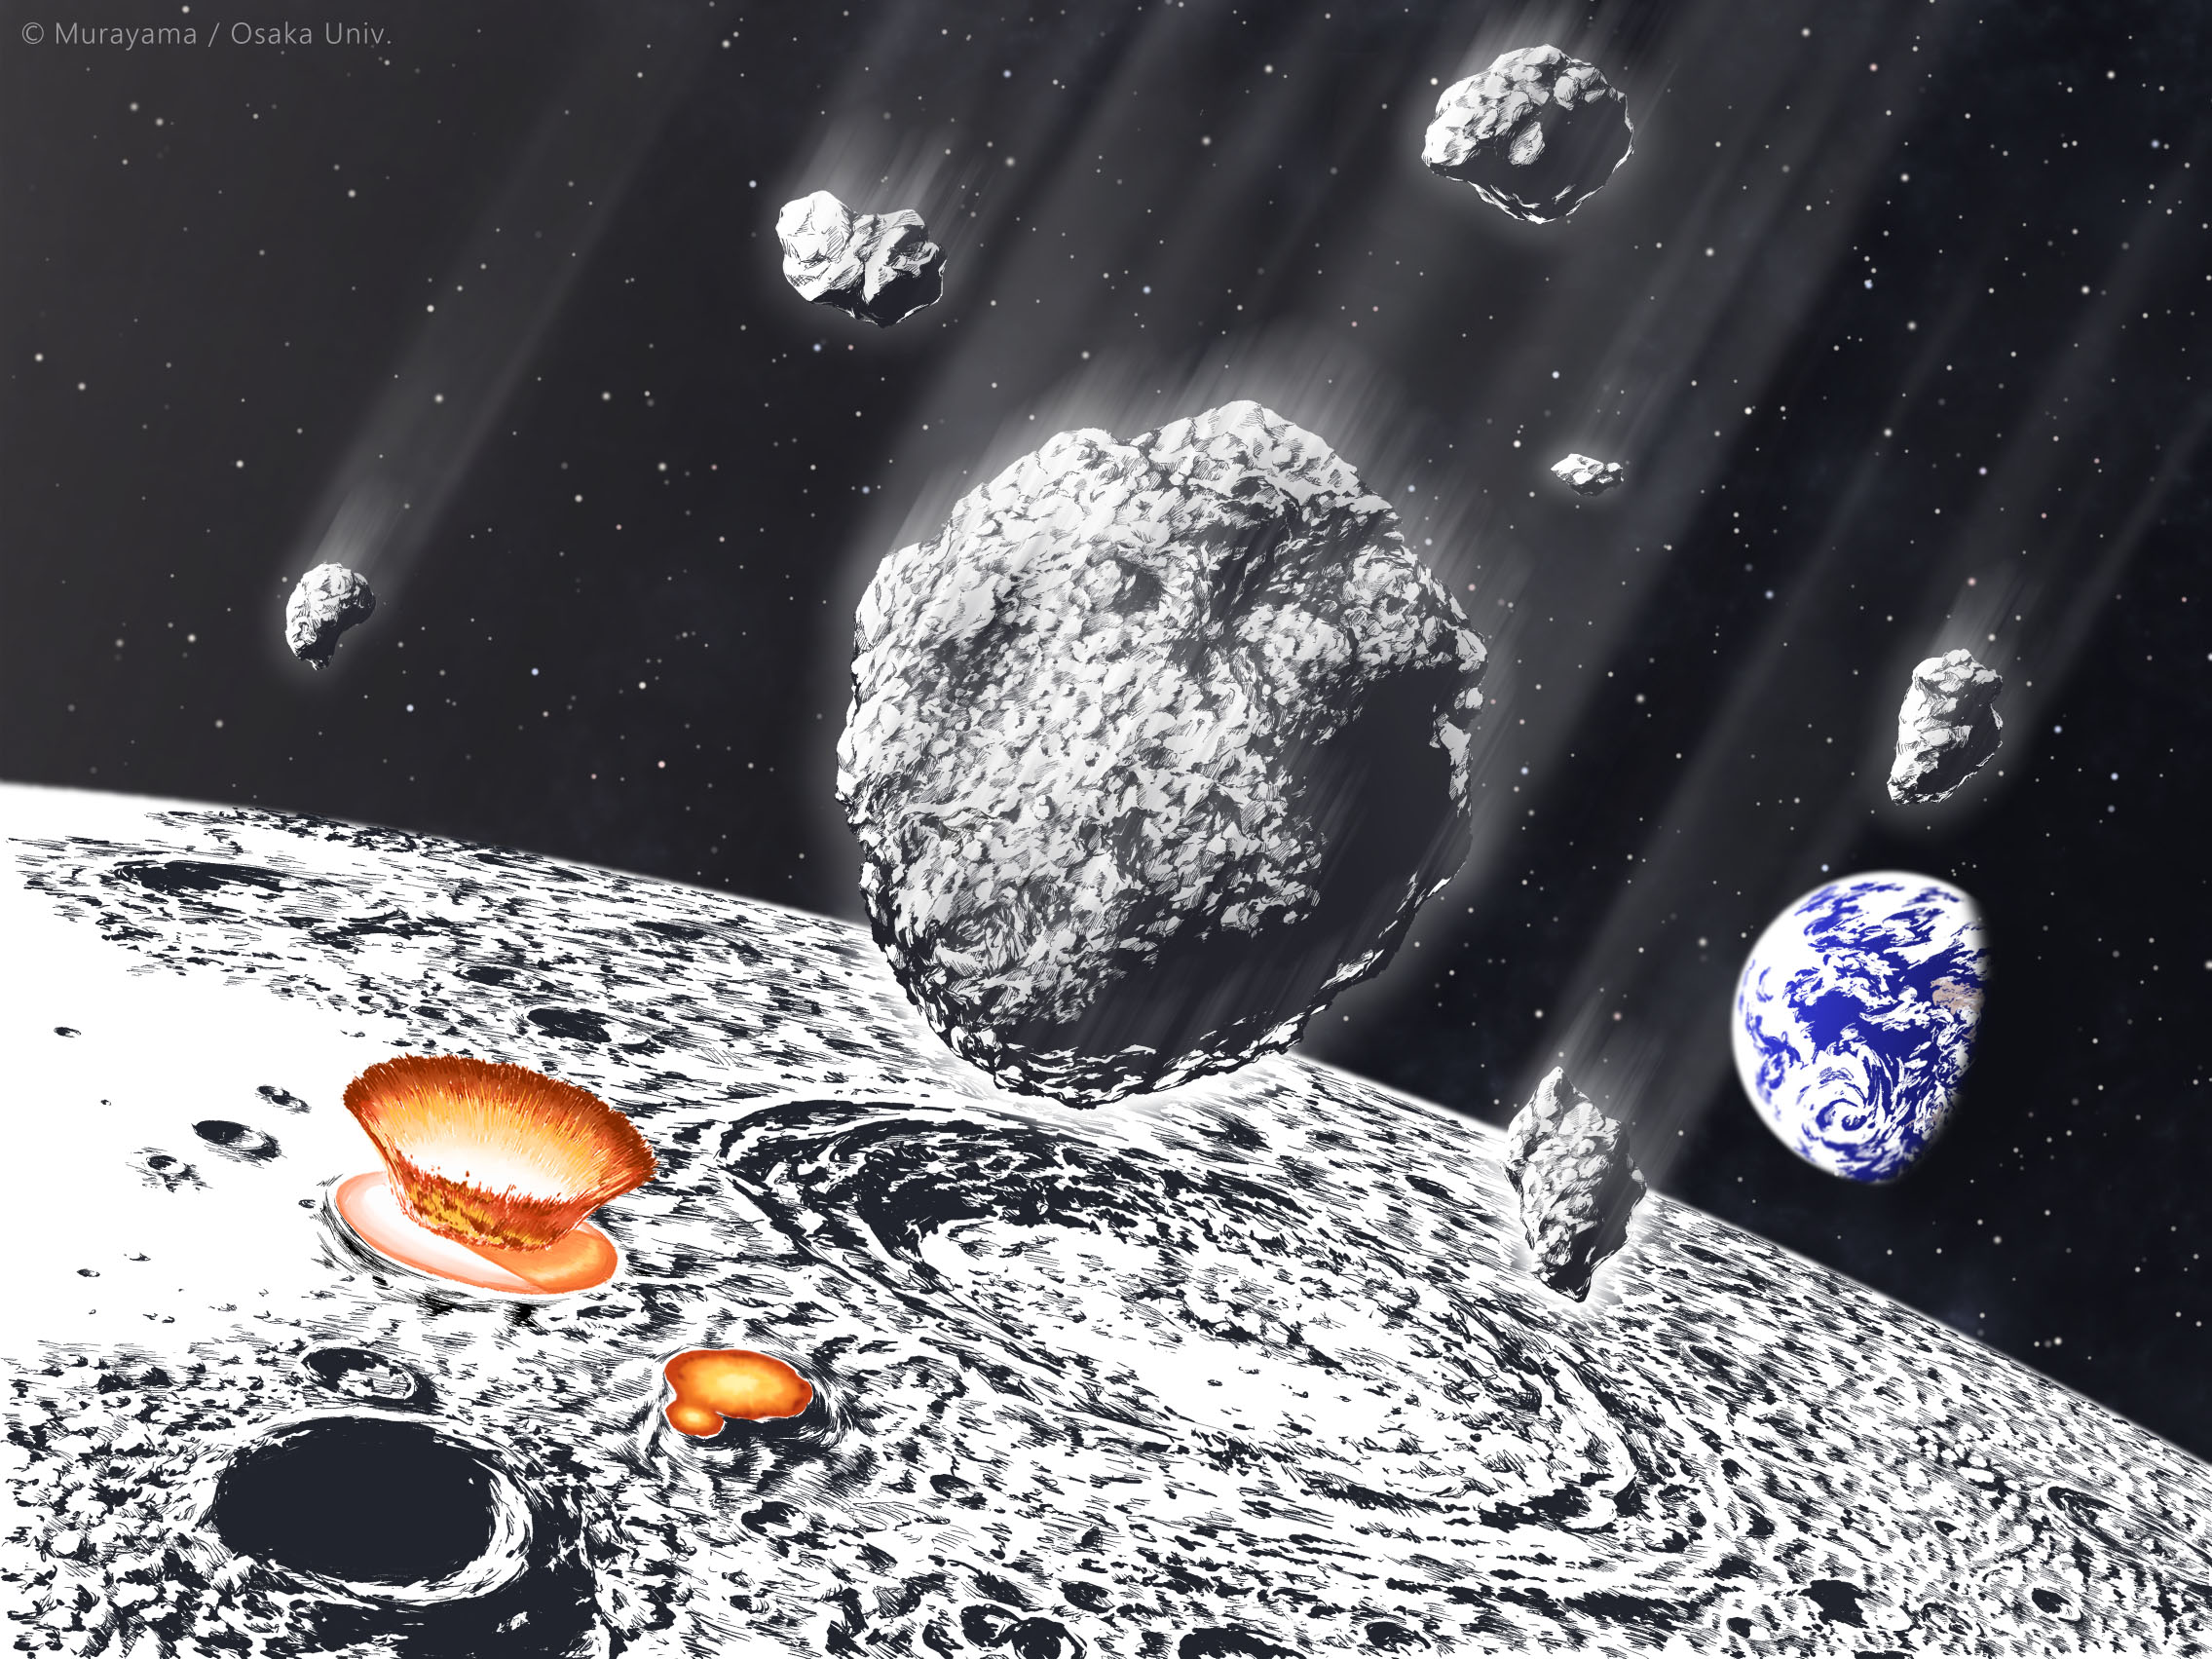 8億年前、月と地球を襲った小惑星シャワー